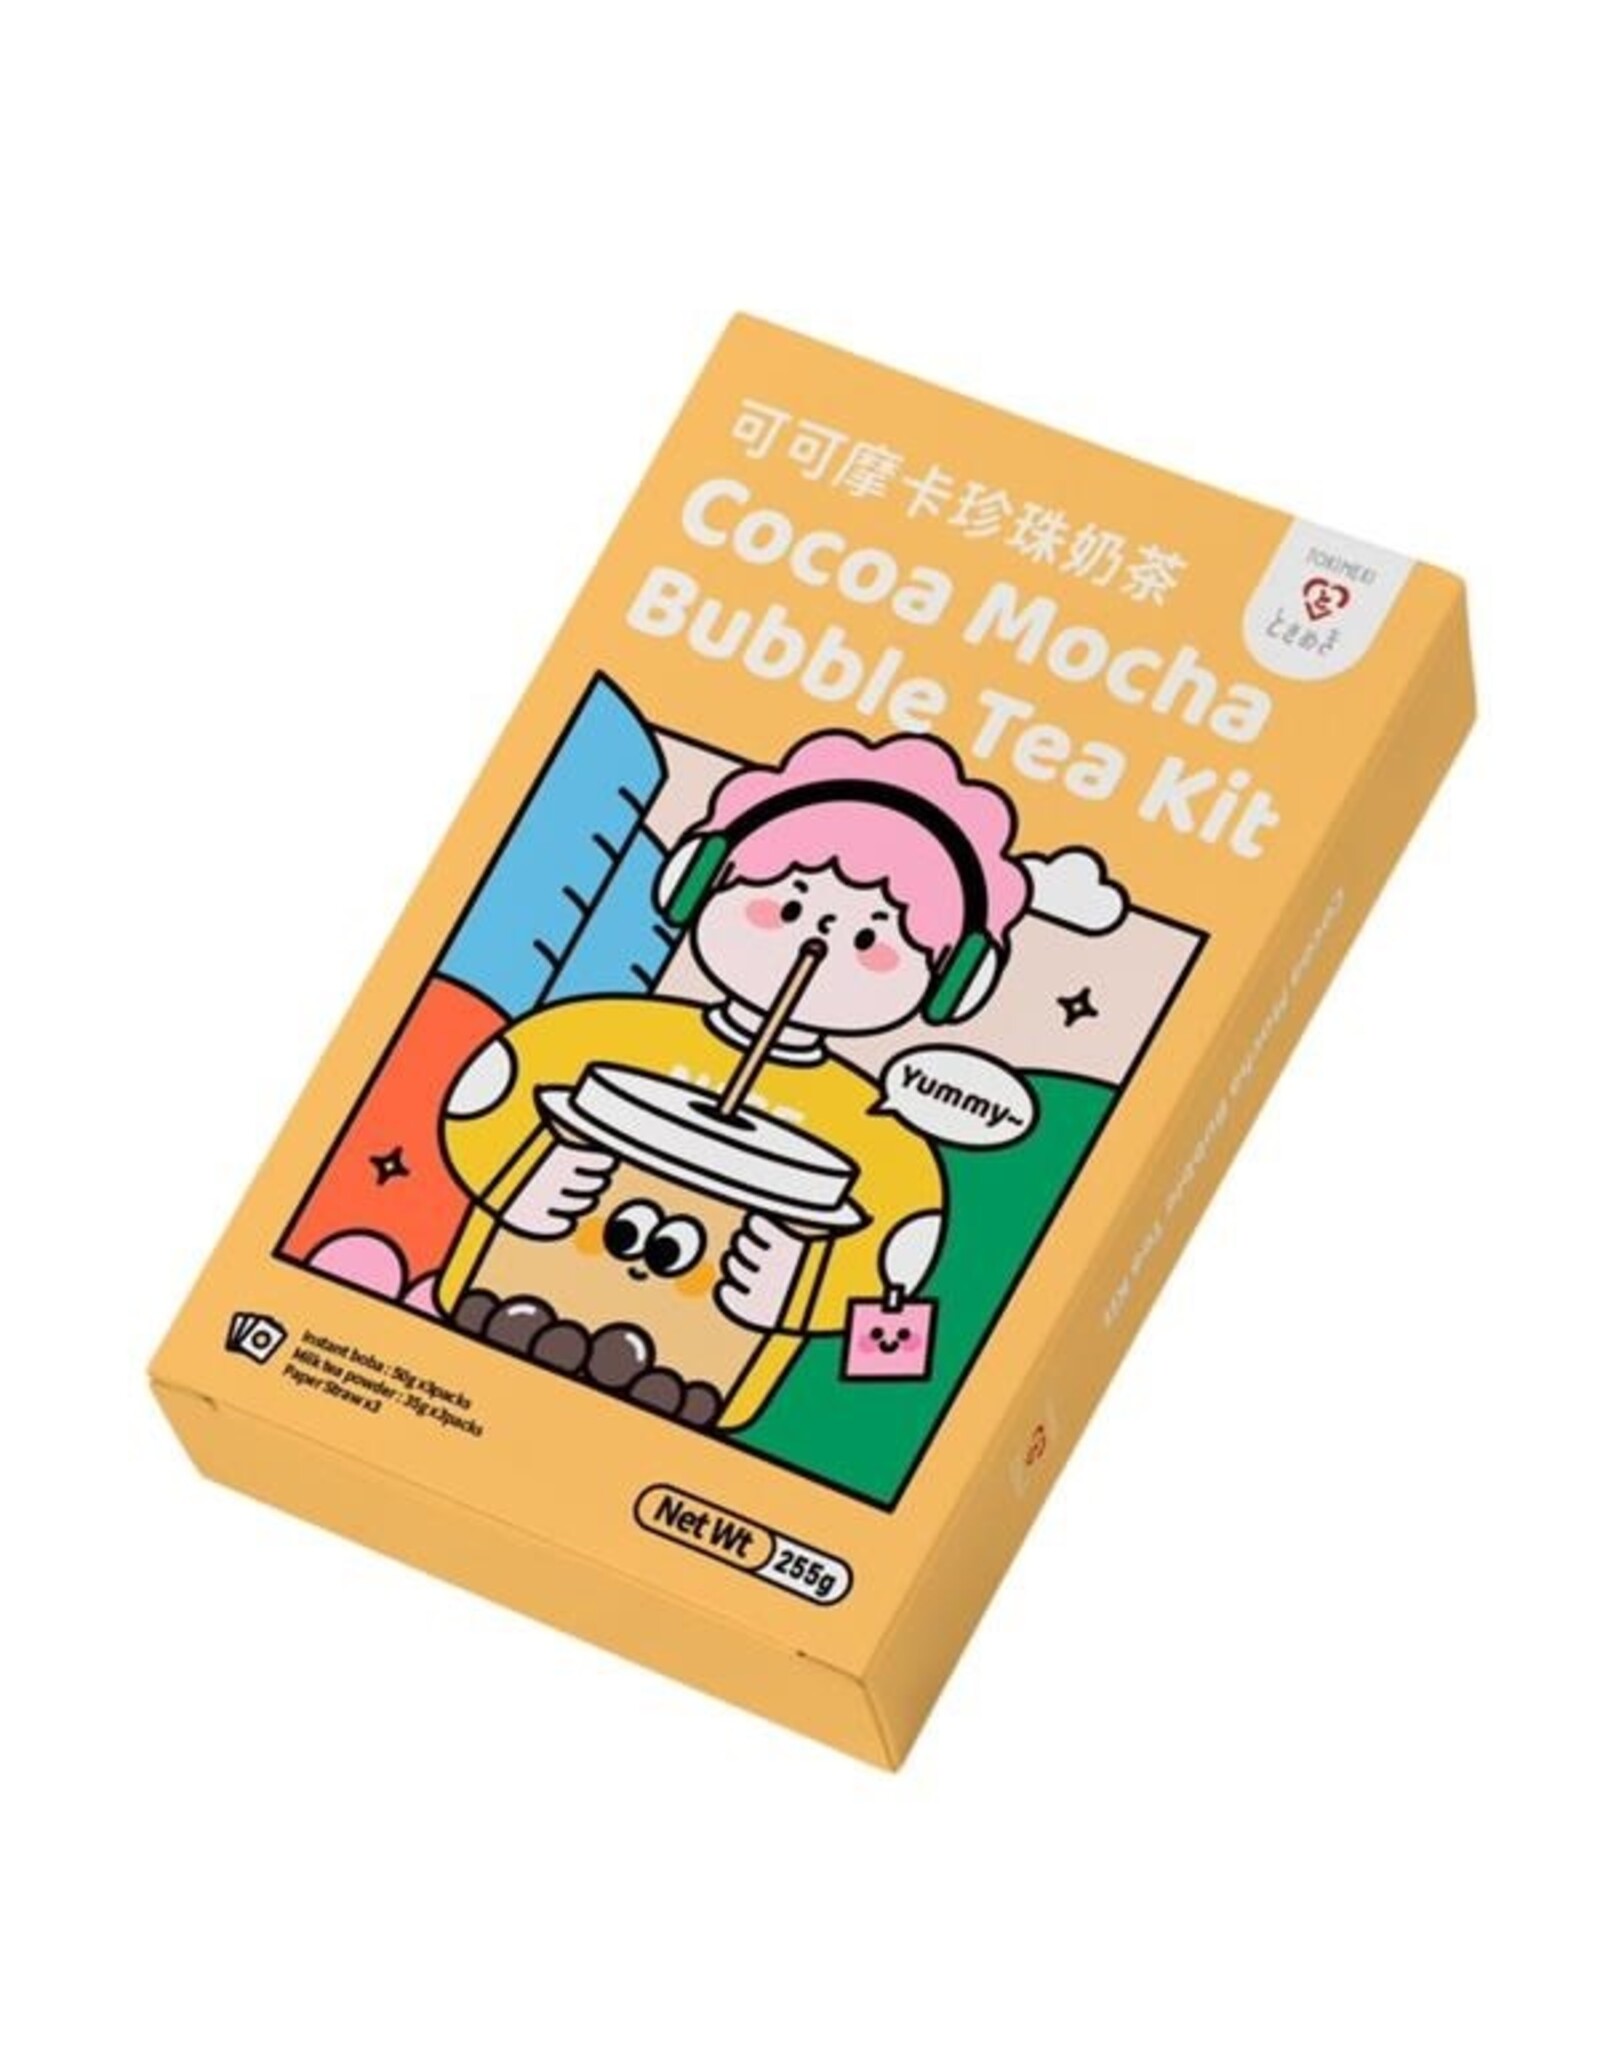 Tokimeki Cocoa Mocha Bubble Tea Kit (3 portions) - 255g